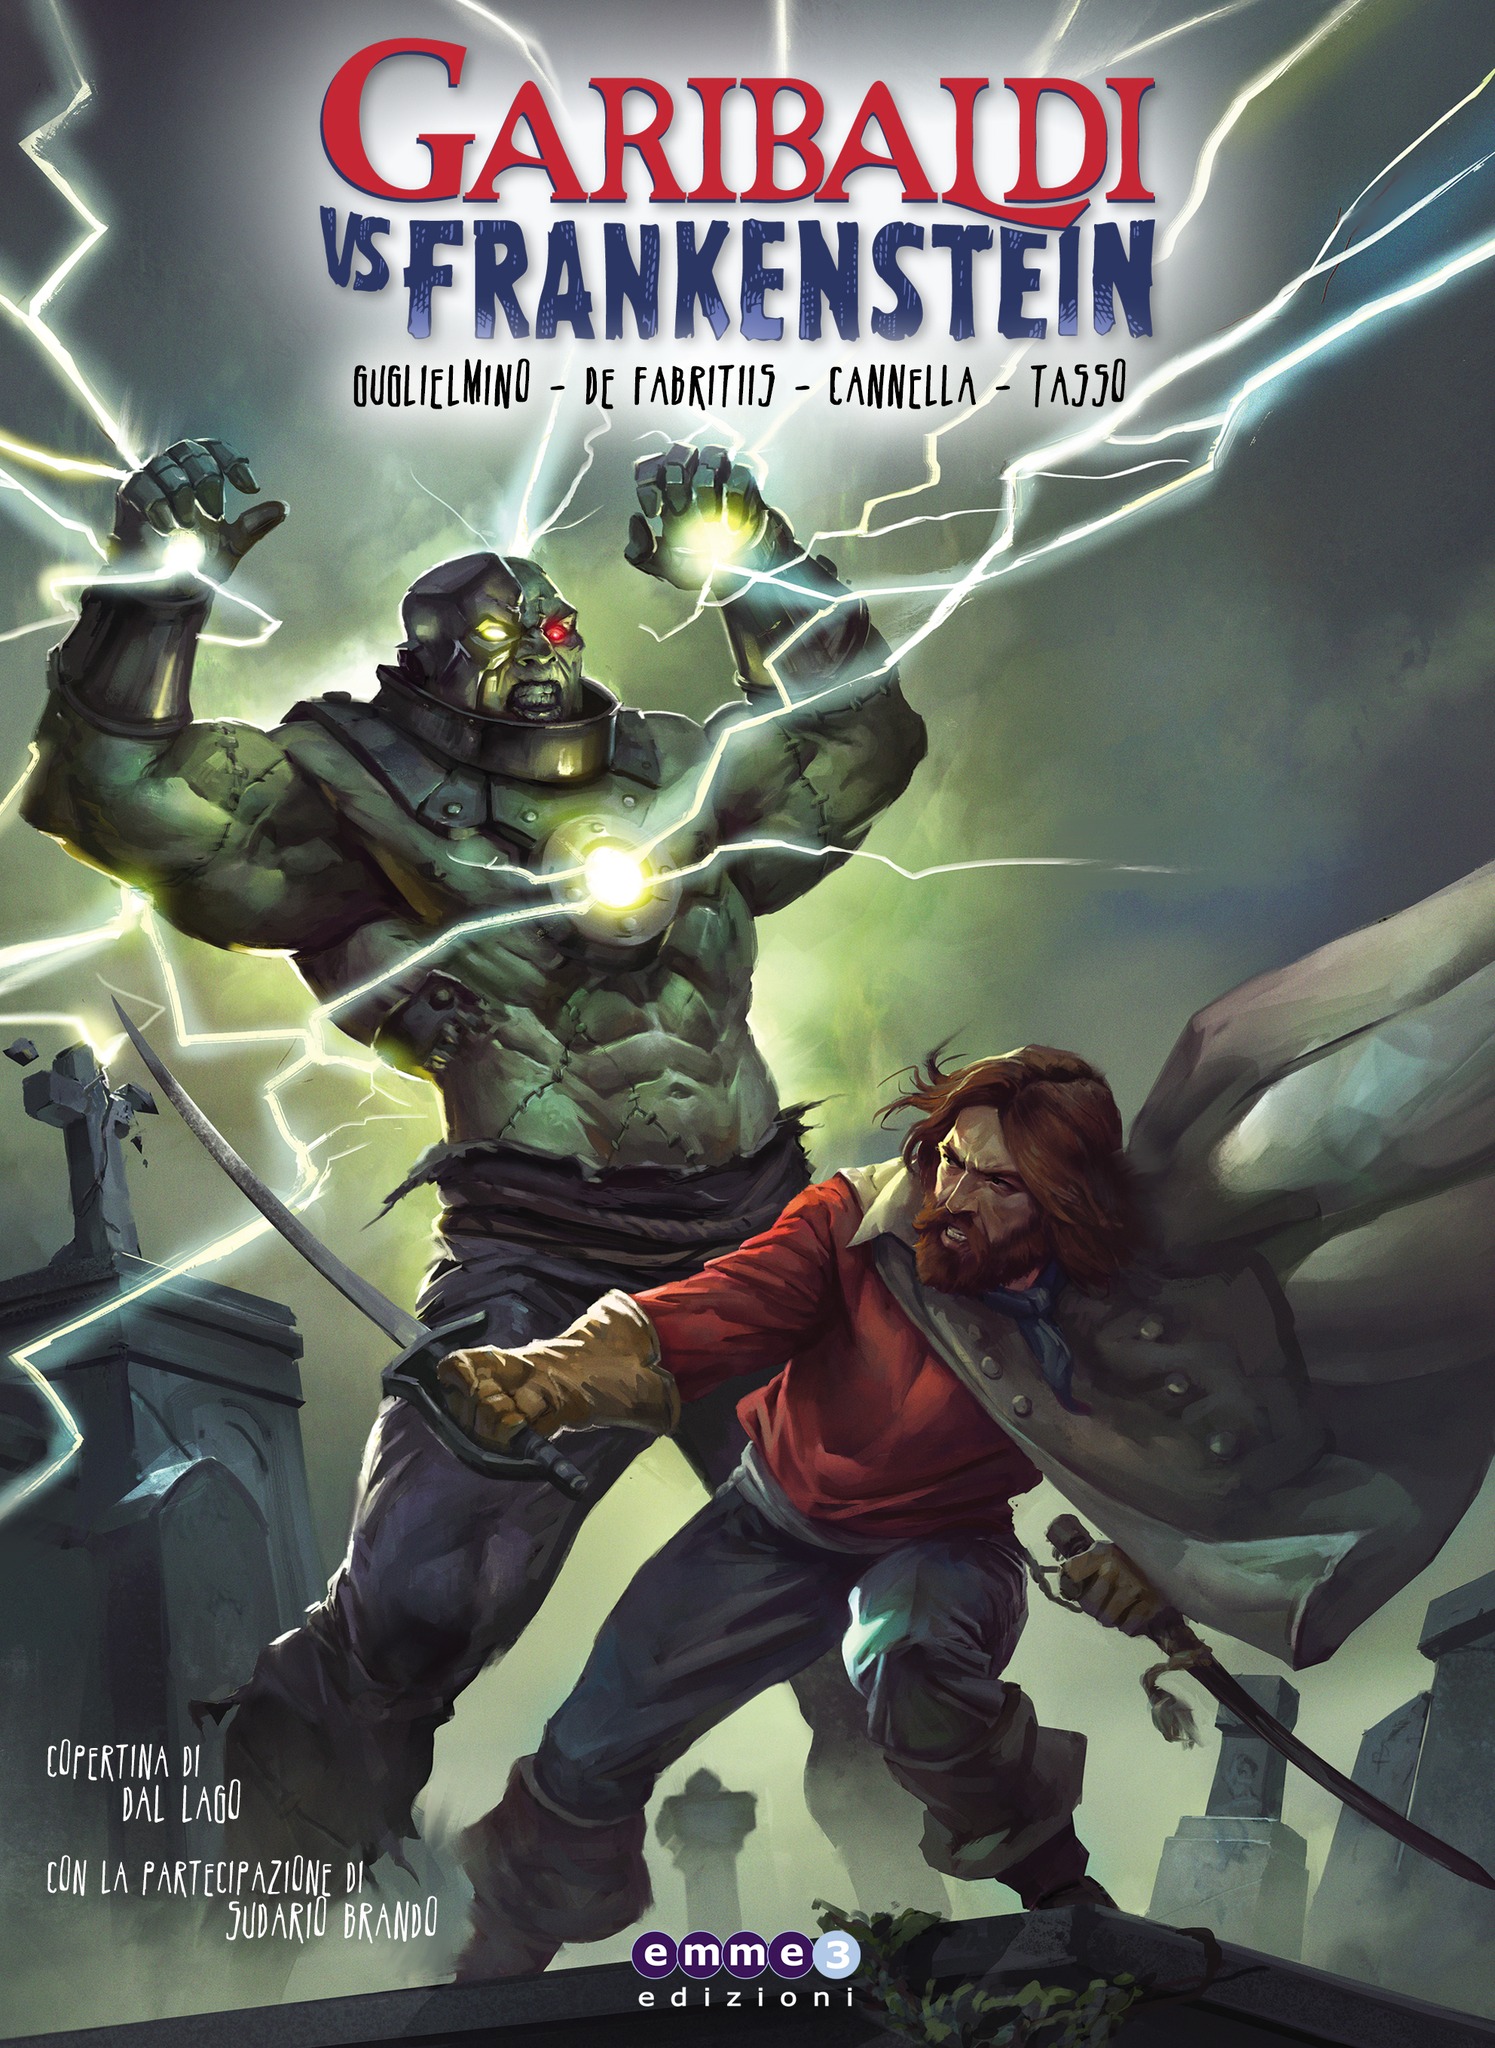 E’ partito il crowdfunding di Garibaldi Vs Frankenstein!